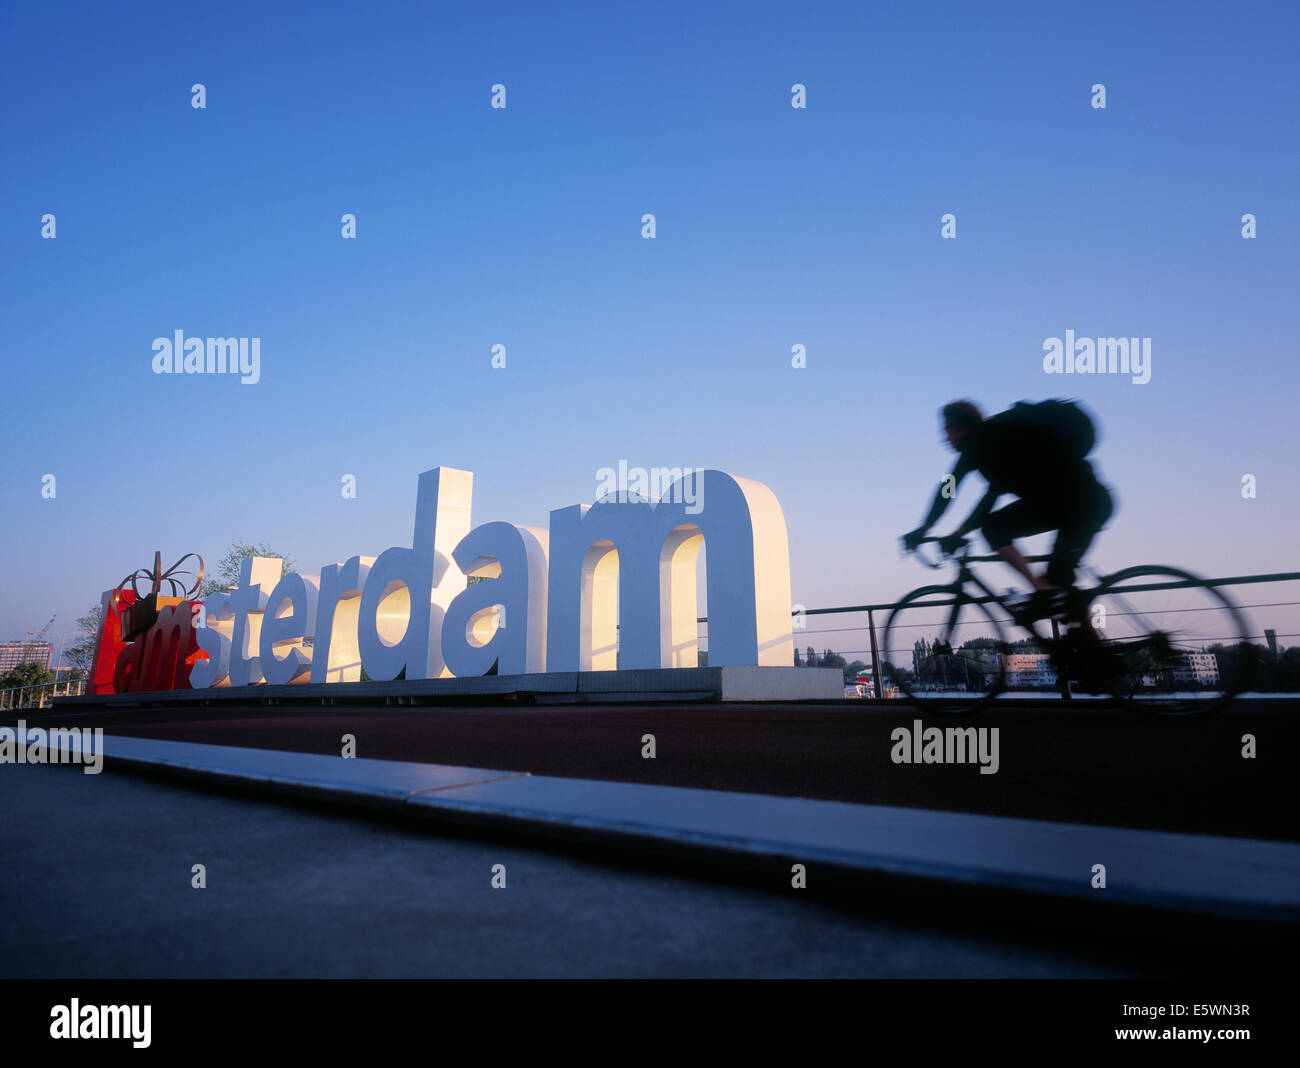 Mann auf dem Fahrrad vorbei an großen Stahl ich Amsterdam Zeichen Stockfoto